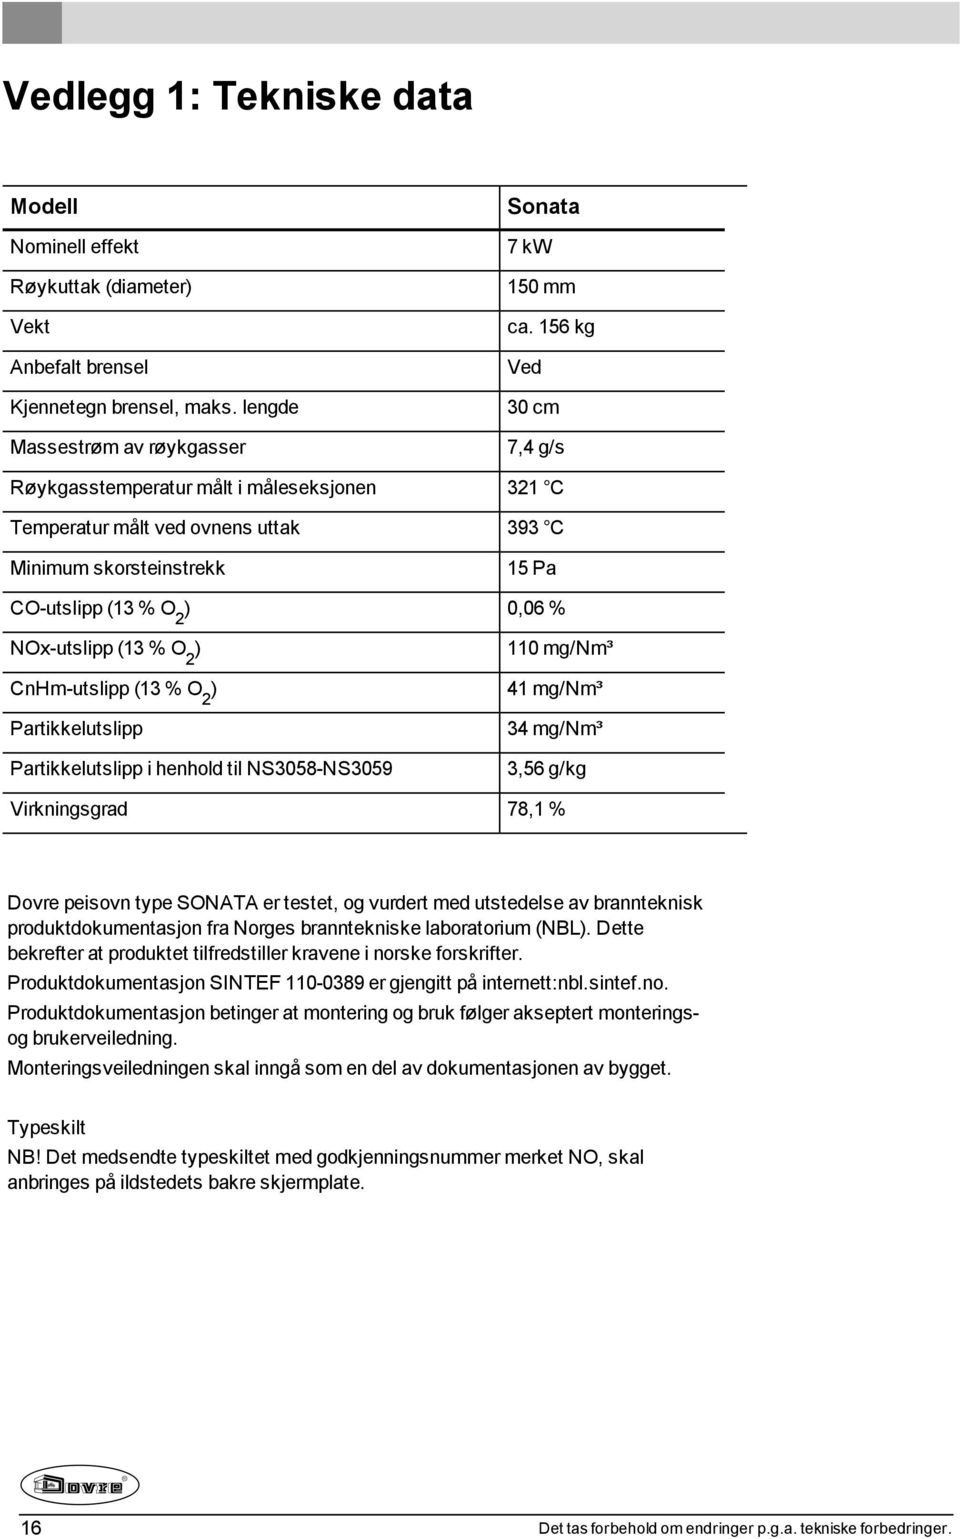 CnHm-utslipp (13 % O 2 ) Partikkelutslipp Partikkelutslipp i henhold til NS3058-NS3059 110 mg/nm³ 41 mg/nm³ 34 mg/nm³ 3,56 g/kg Virkningsgrad 78,1 % Dovre peisovn type SONATA er testet, og vurdert